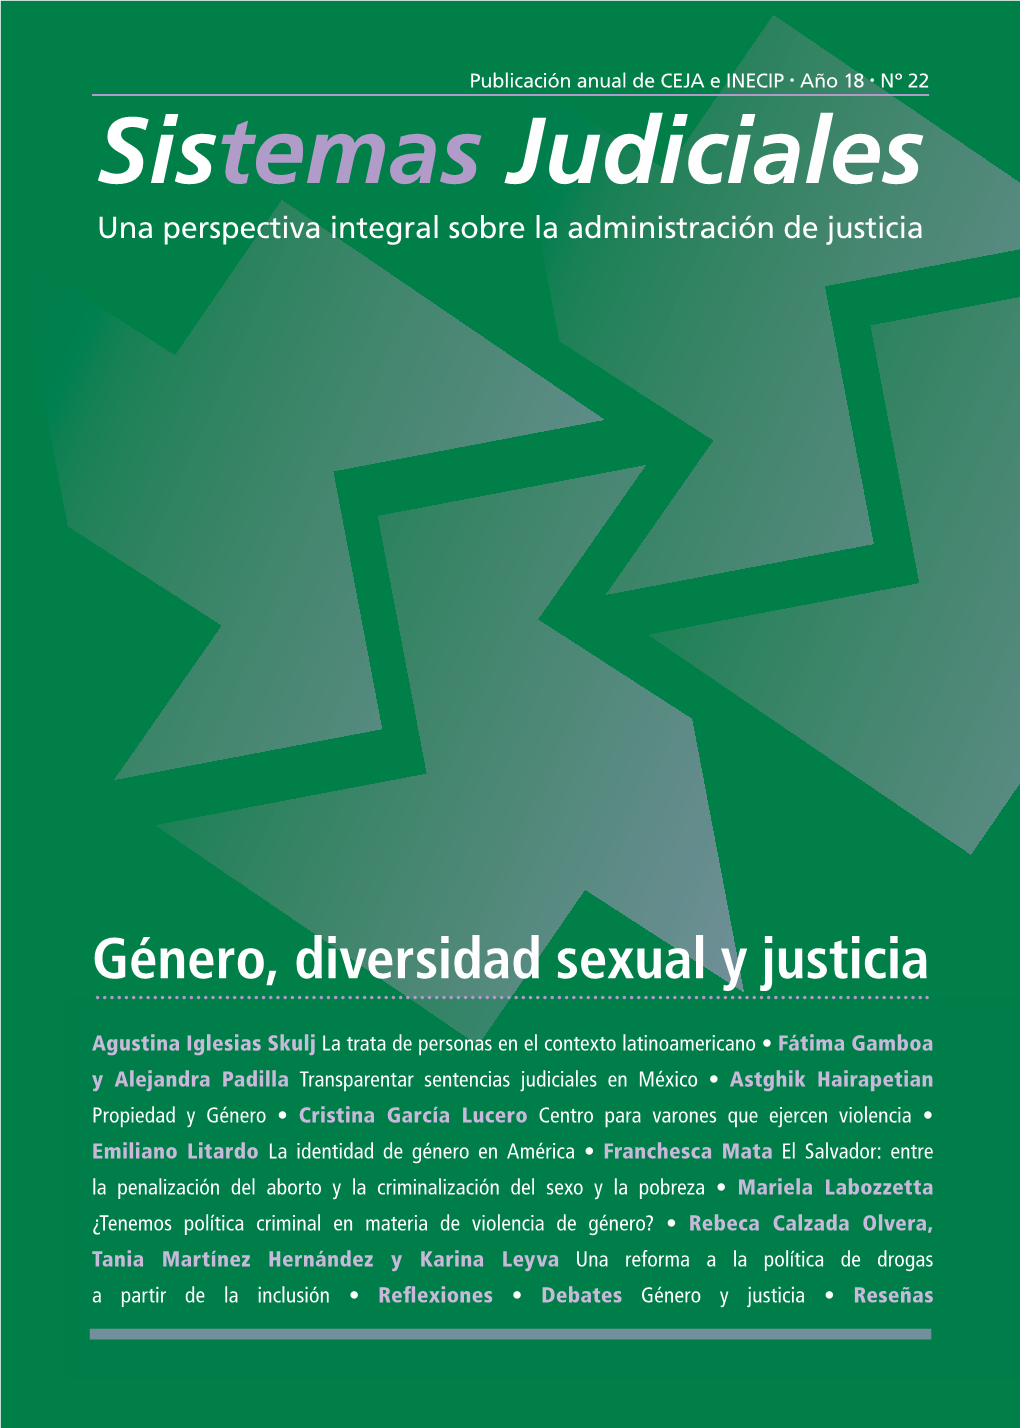 Género, Diversidad Sexual Y Justicia